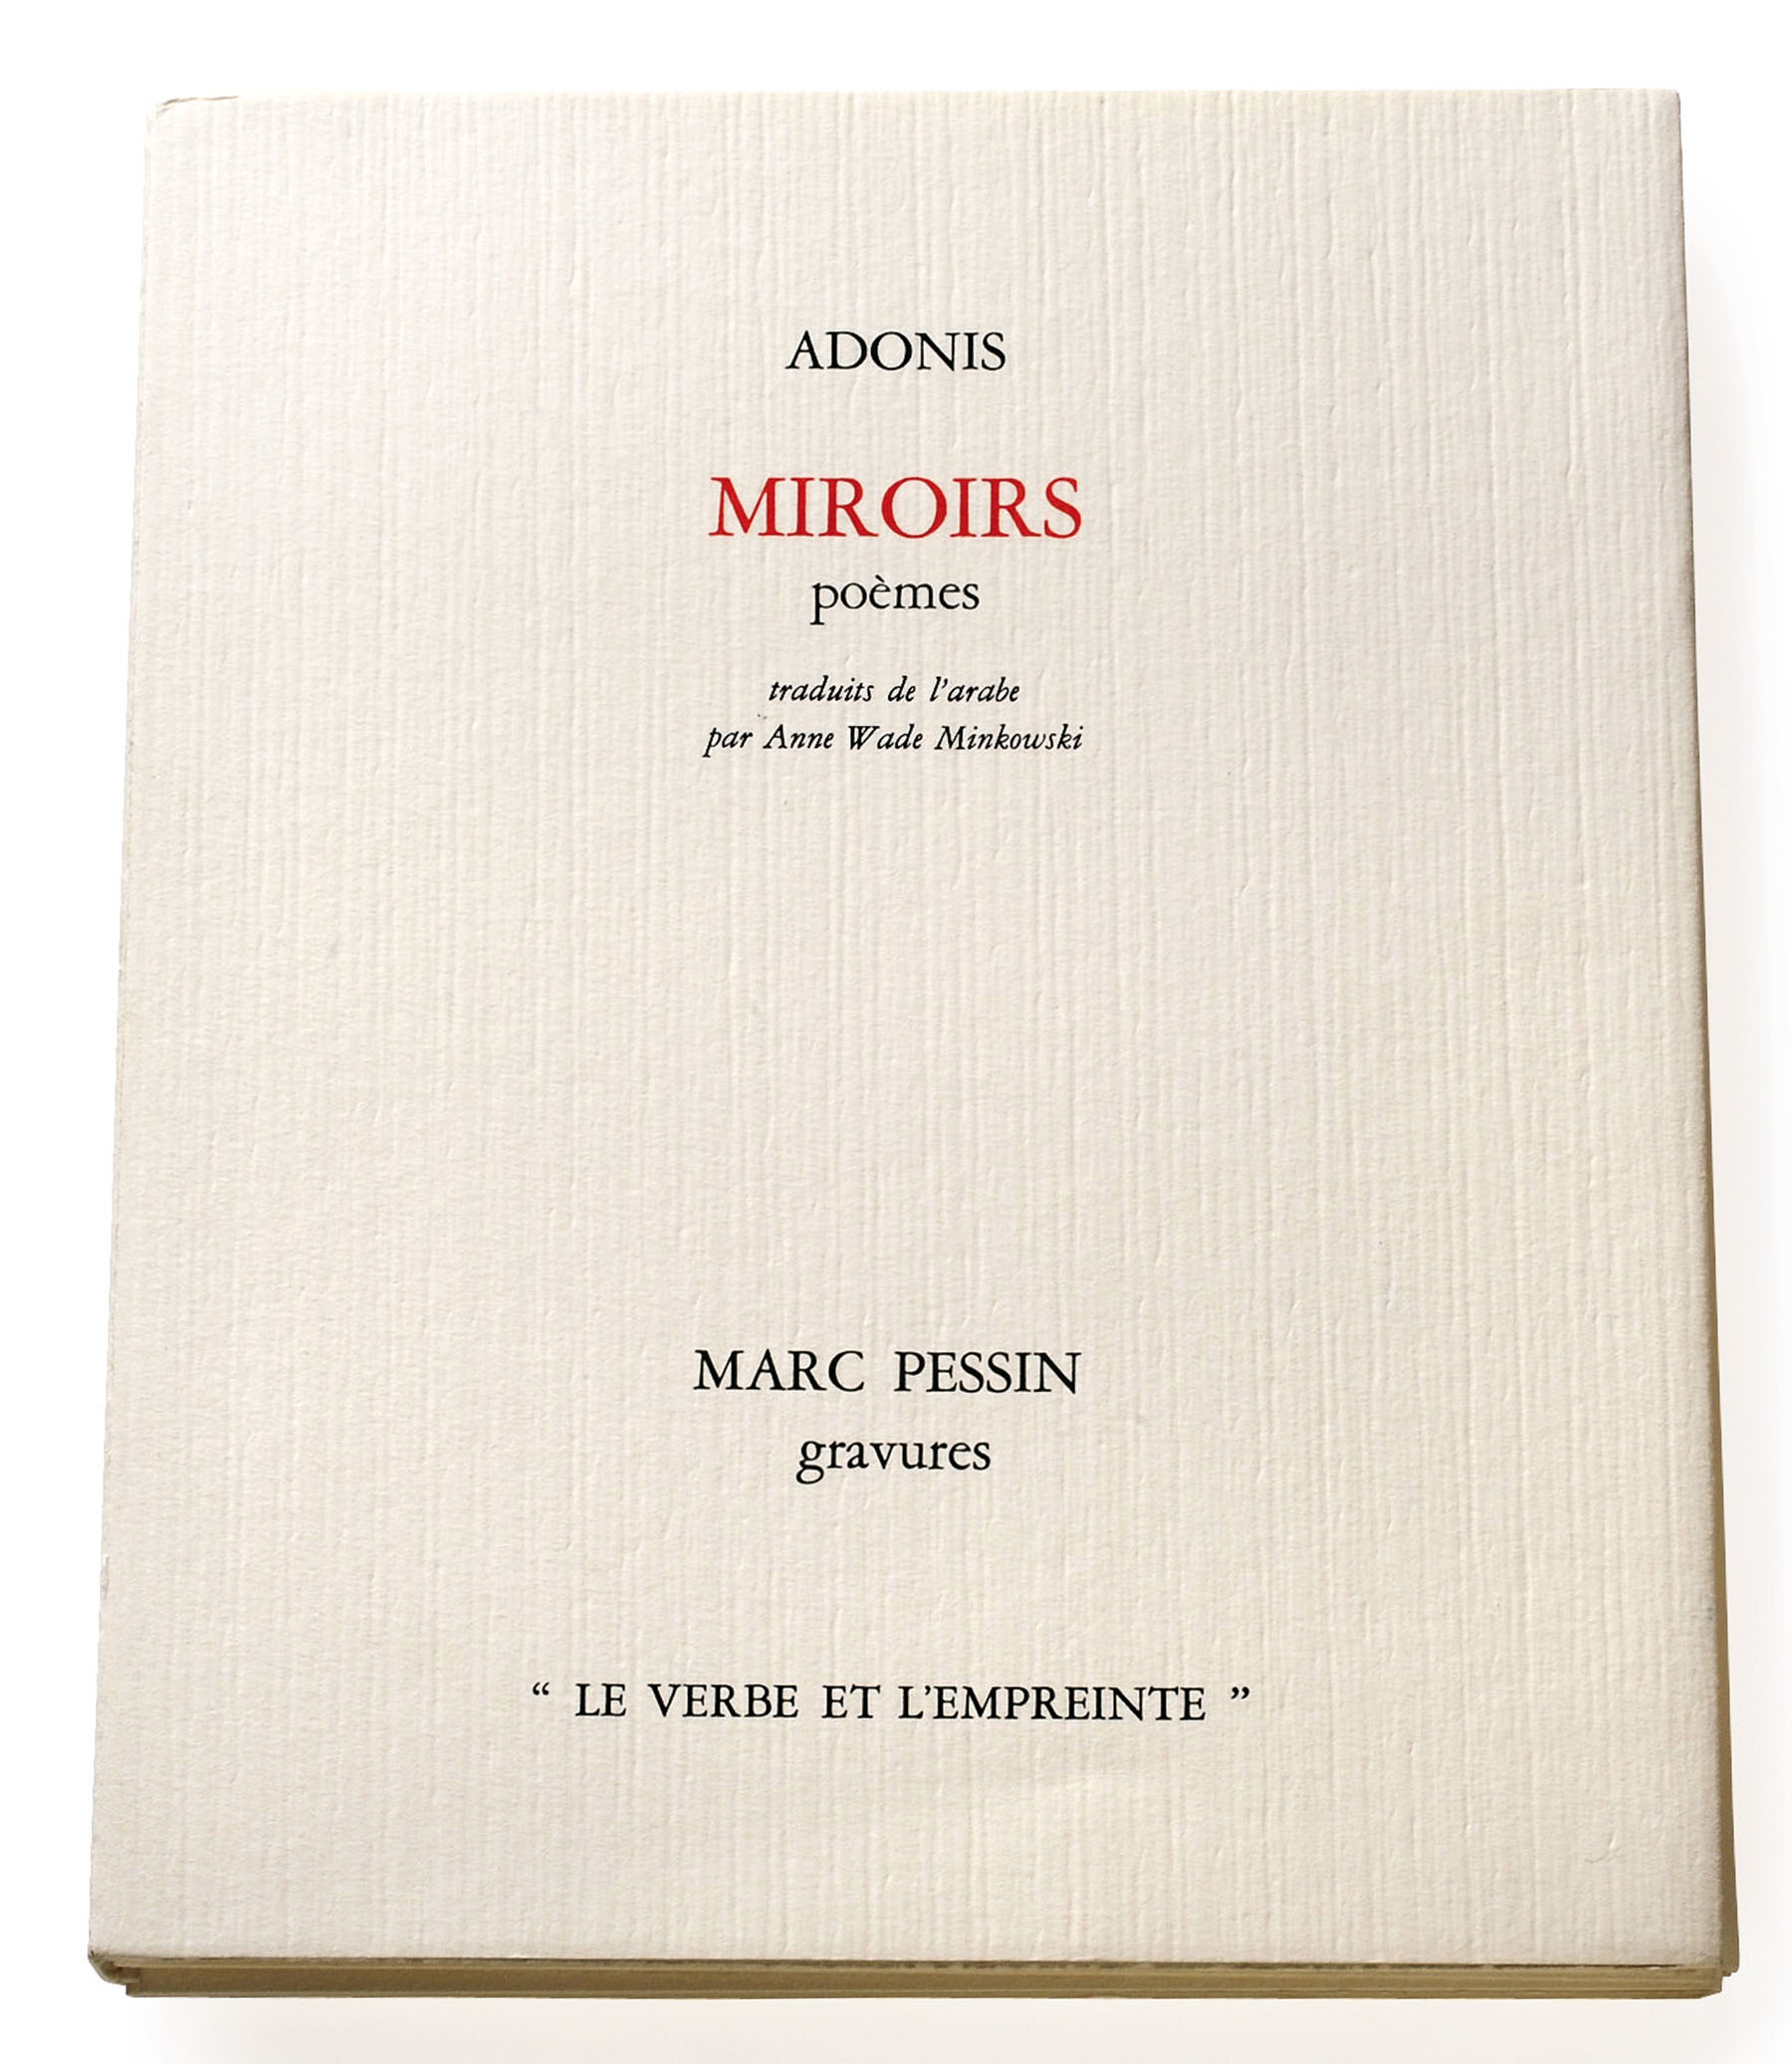 Couverture de "Miroirs" de Adonis